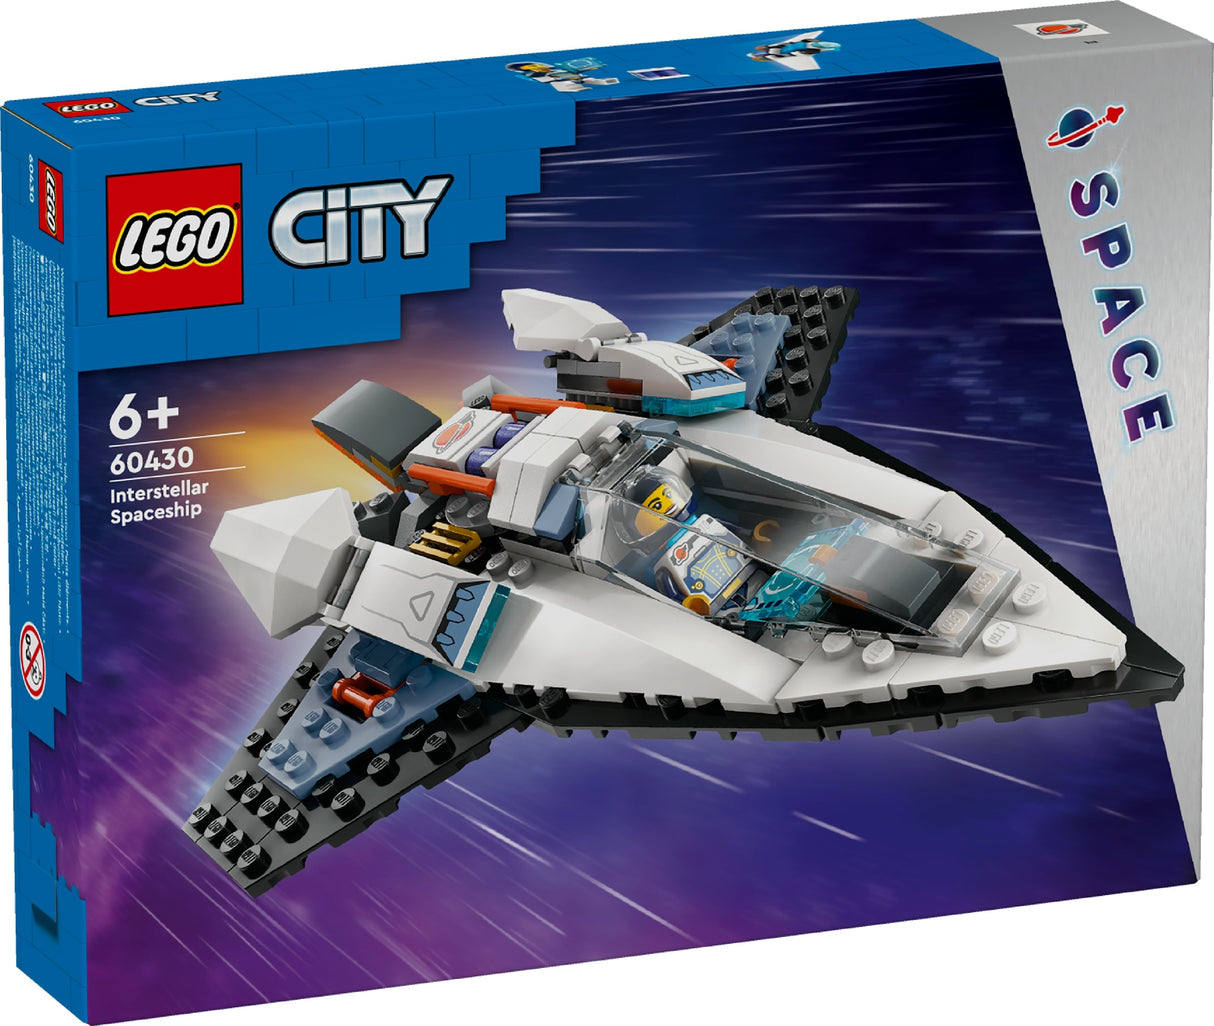 LEGO CITY INTERSTELLAR SPACESHIP 60430 AGE: 6+